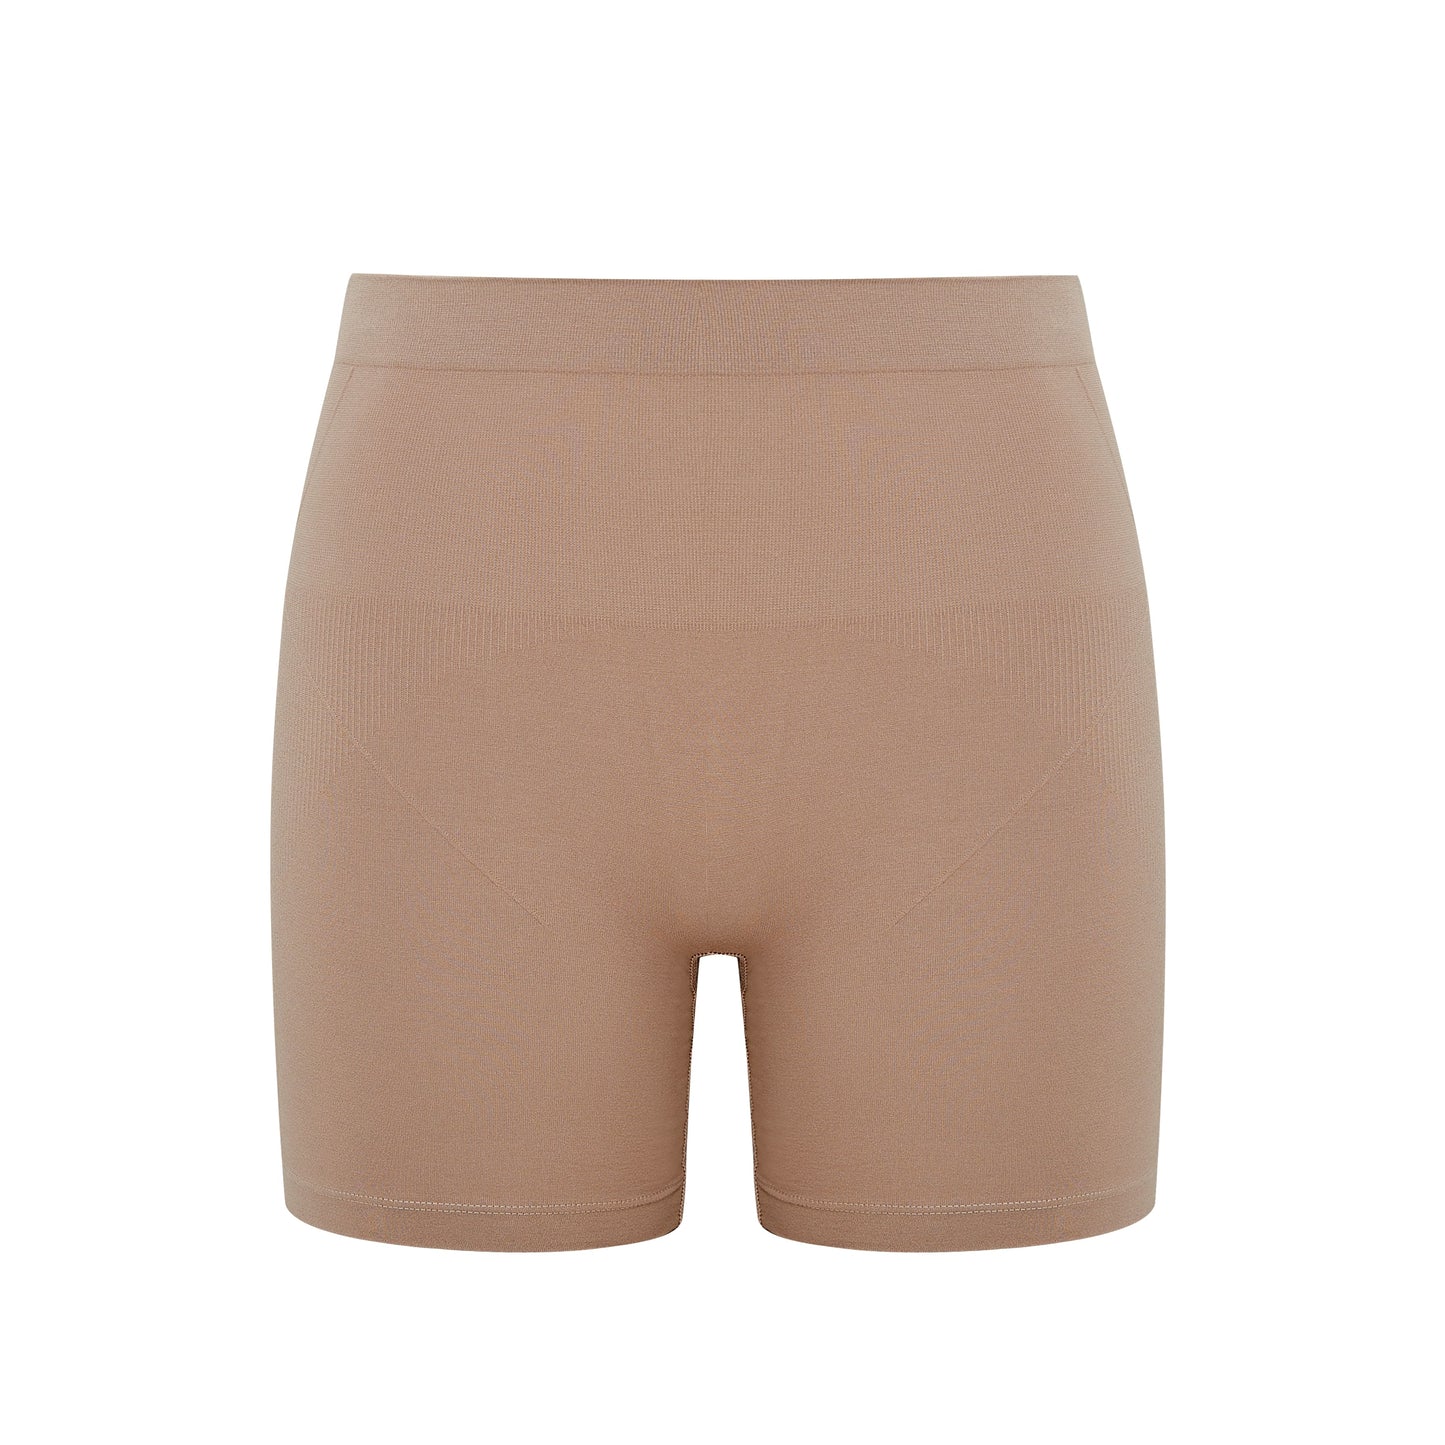 flat lay image of tan shorts